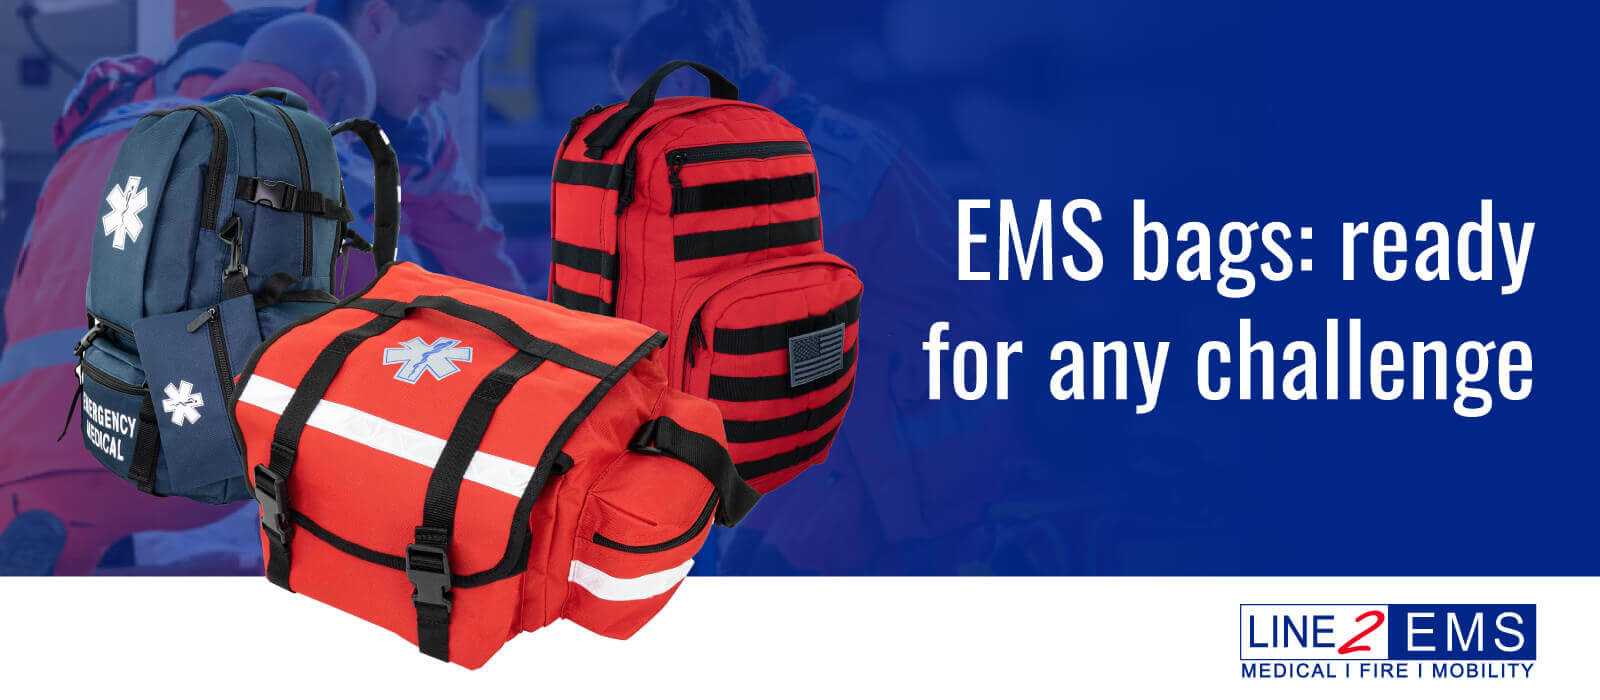 EMT carry bag secure pockets everyday use